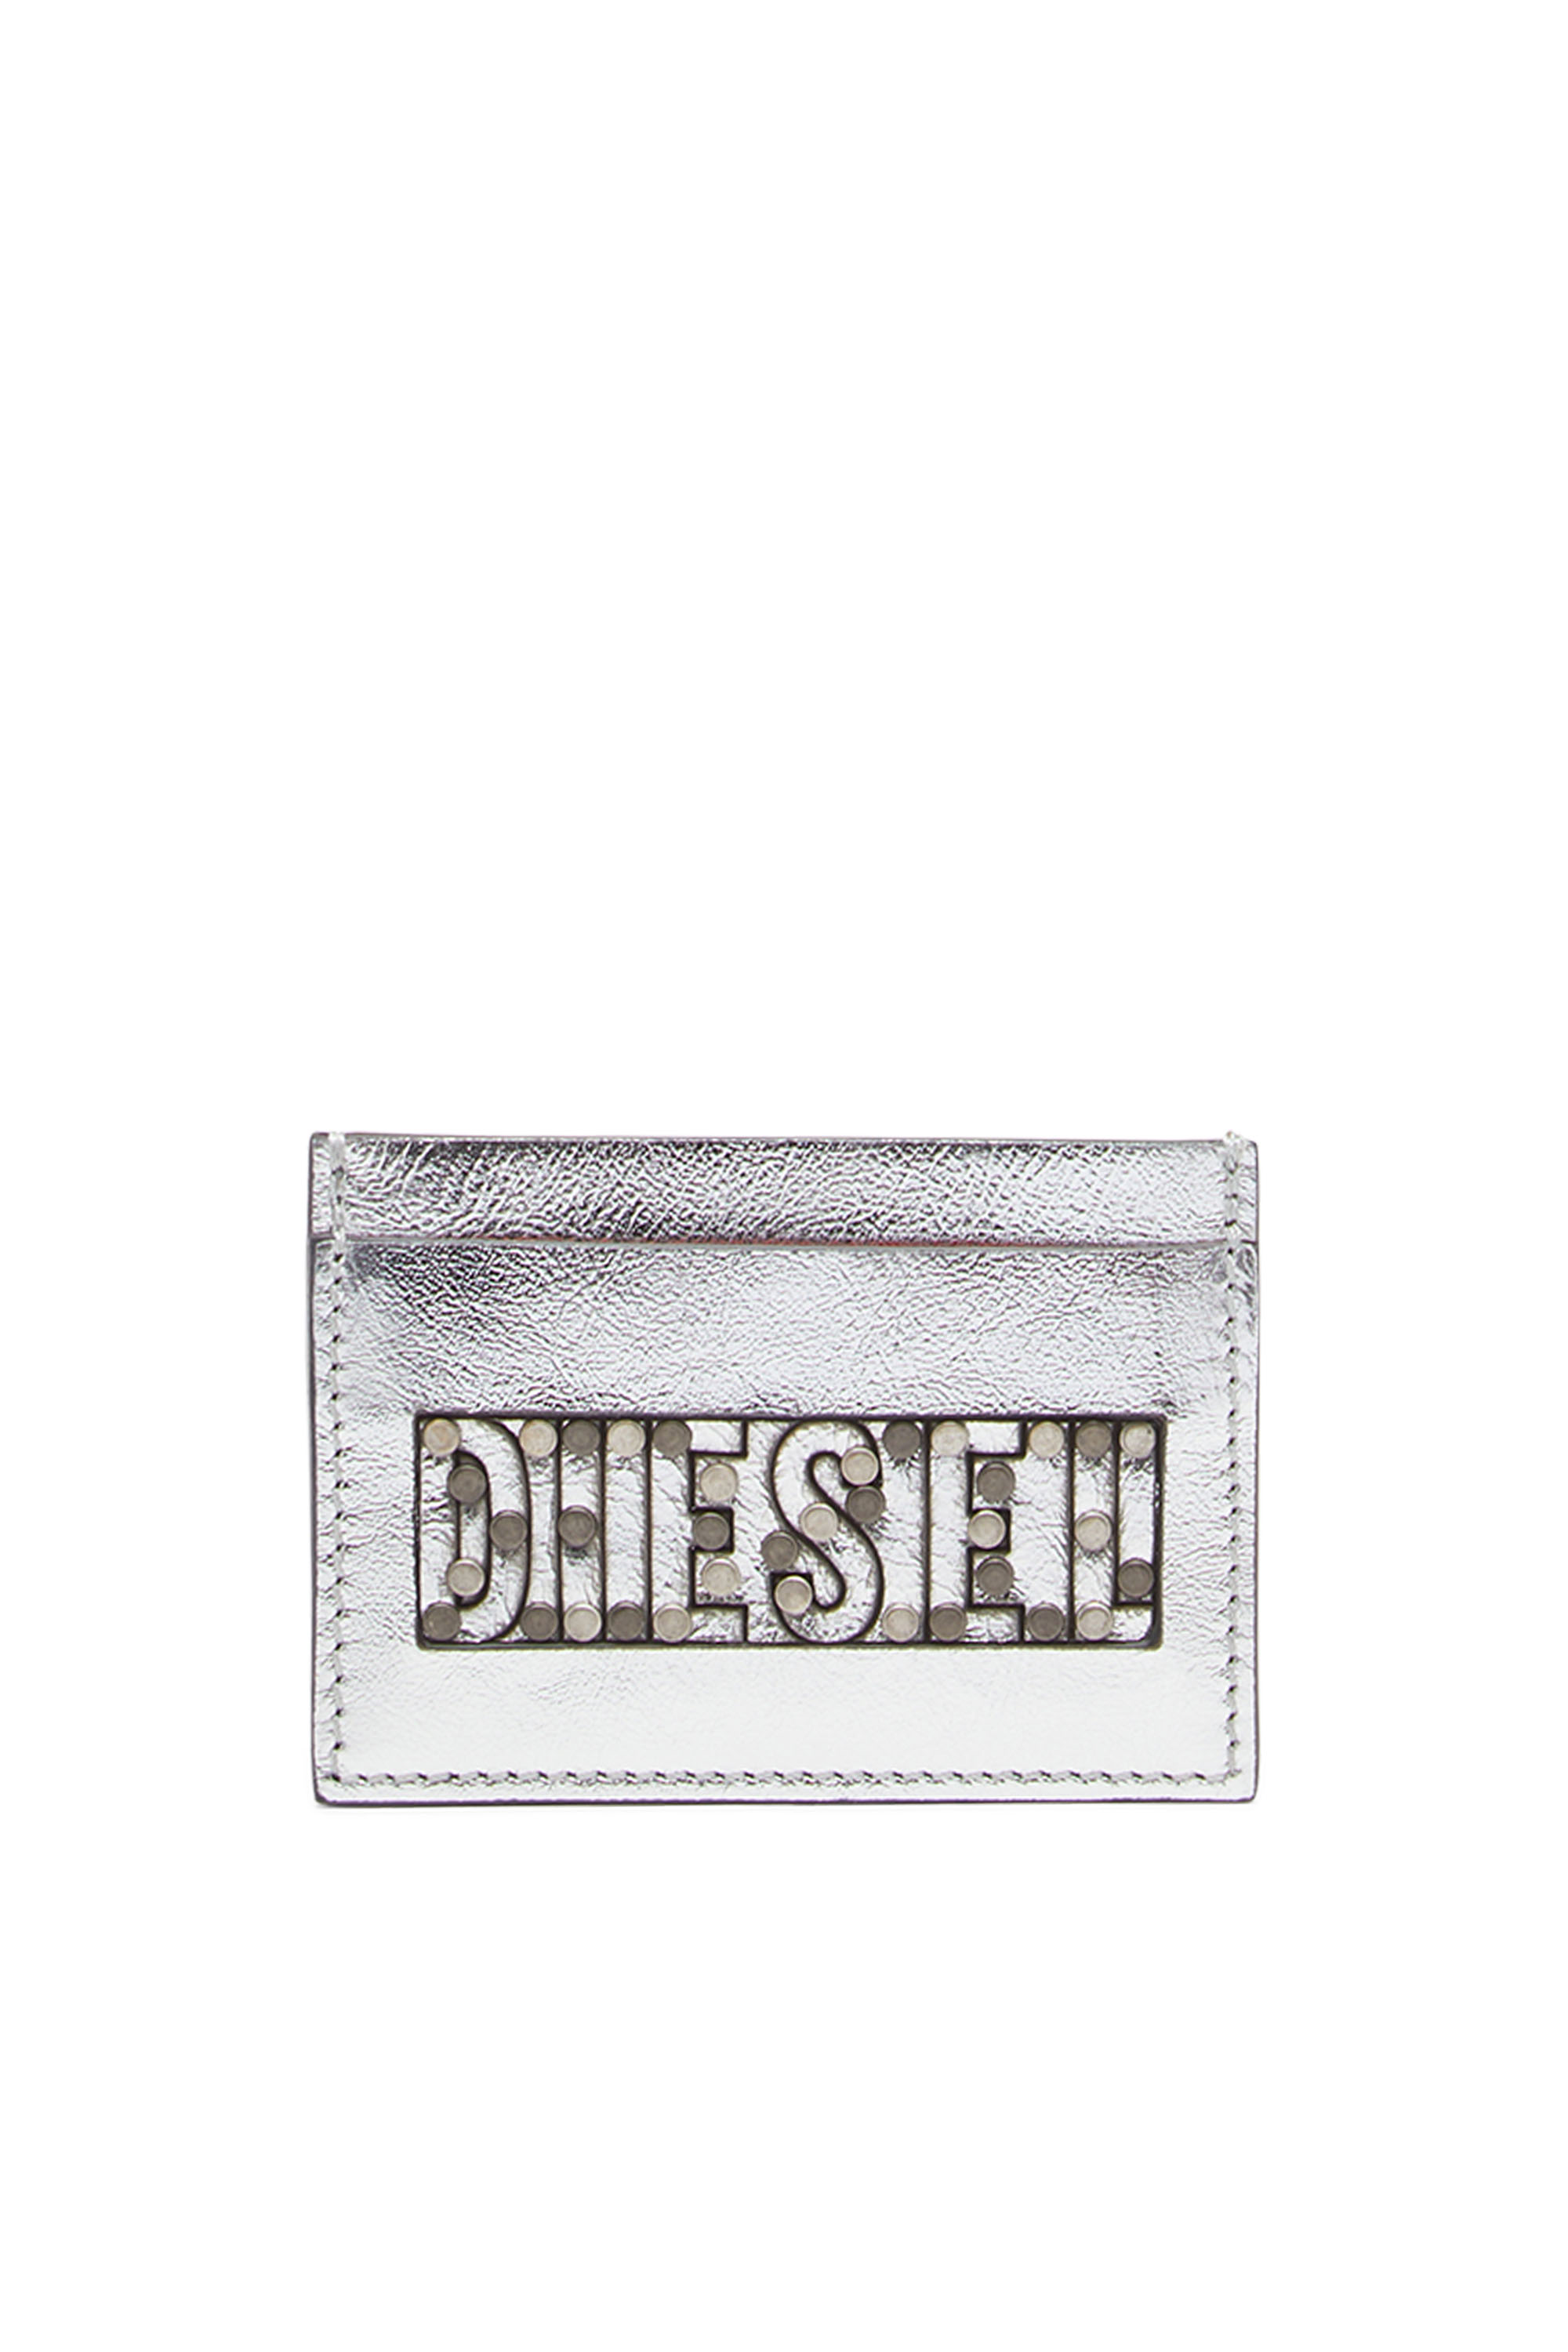 Diesel - JOHN, Silver - Image 1